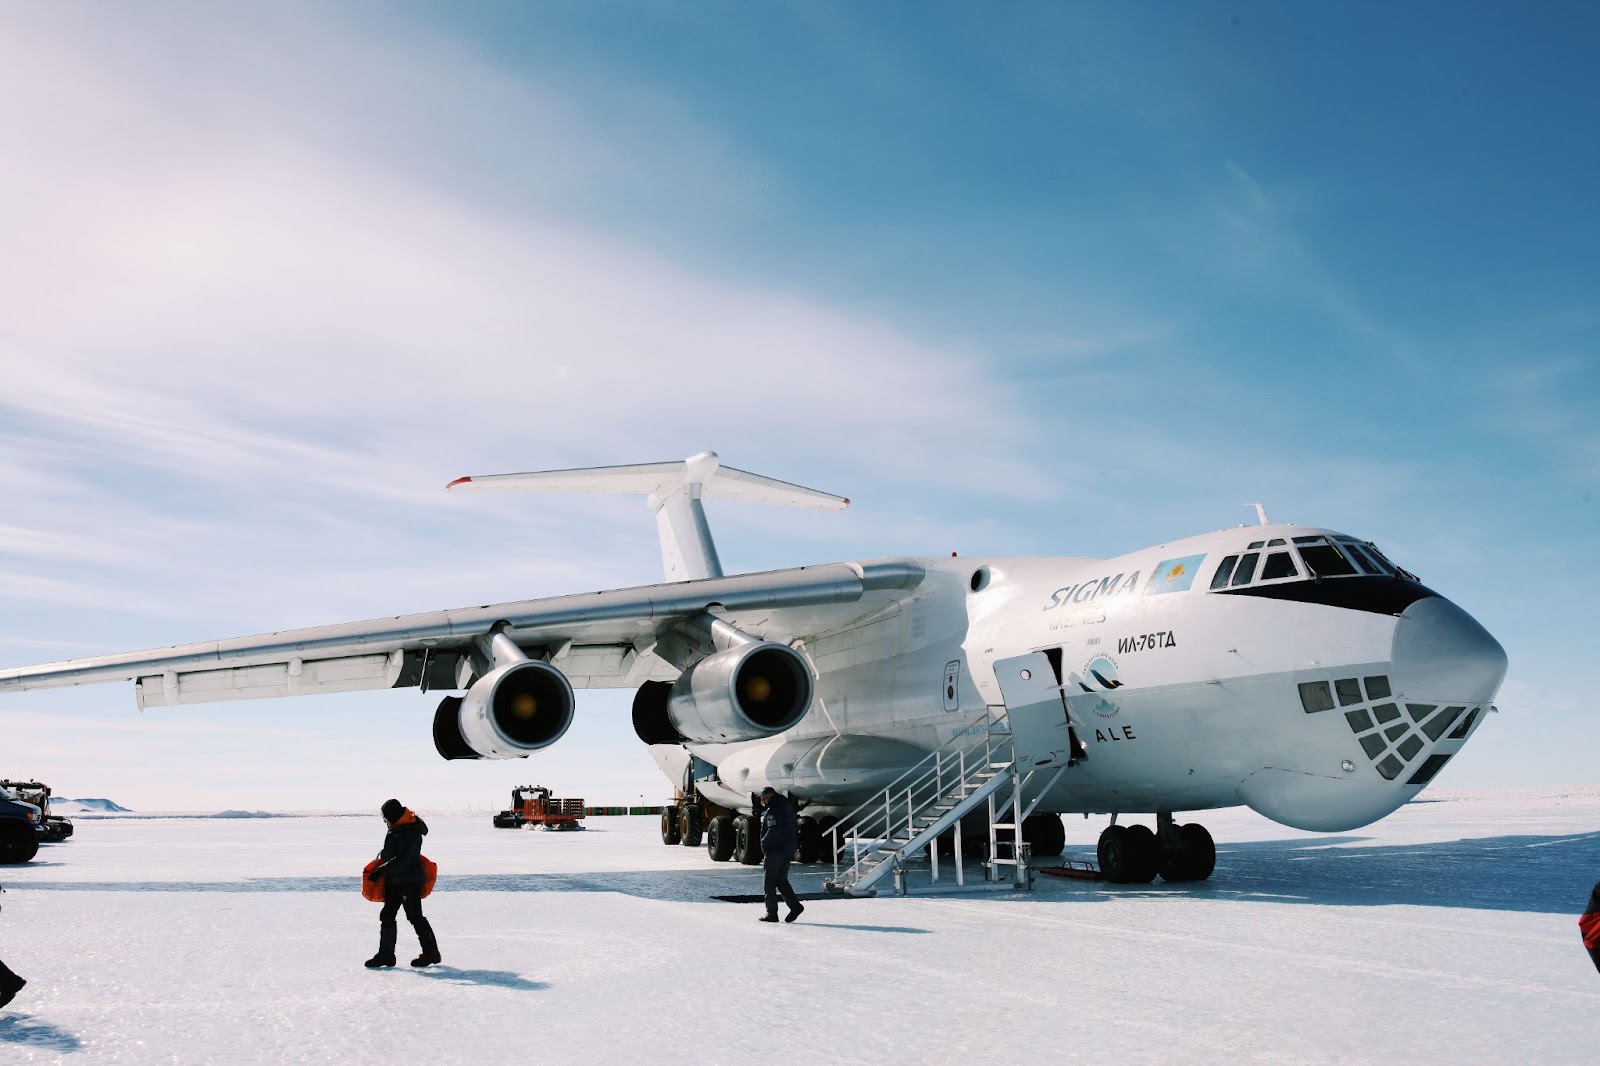 Большинство пассажирских и грузовых самолетов, летающих в Антарктиду - это переоборудованные ИЛ-76.